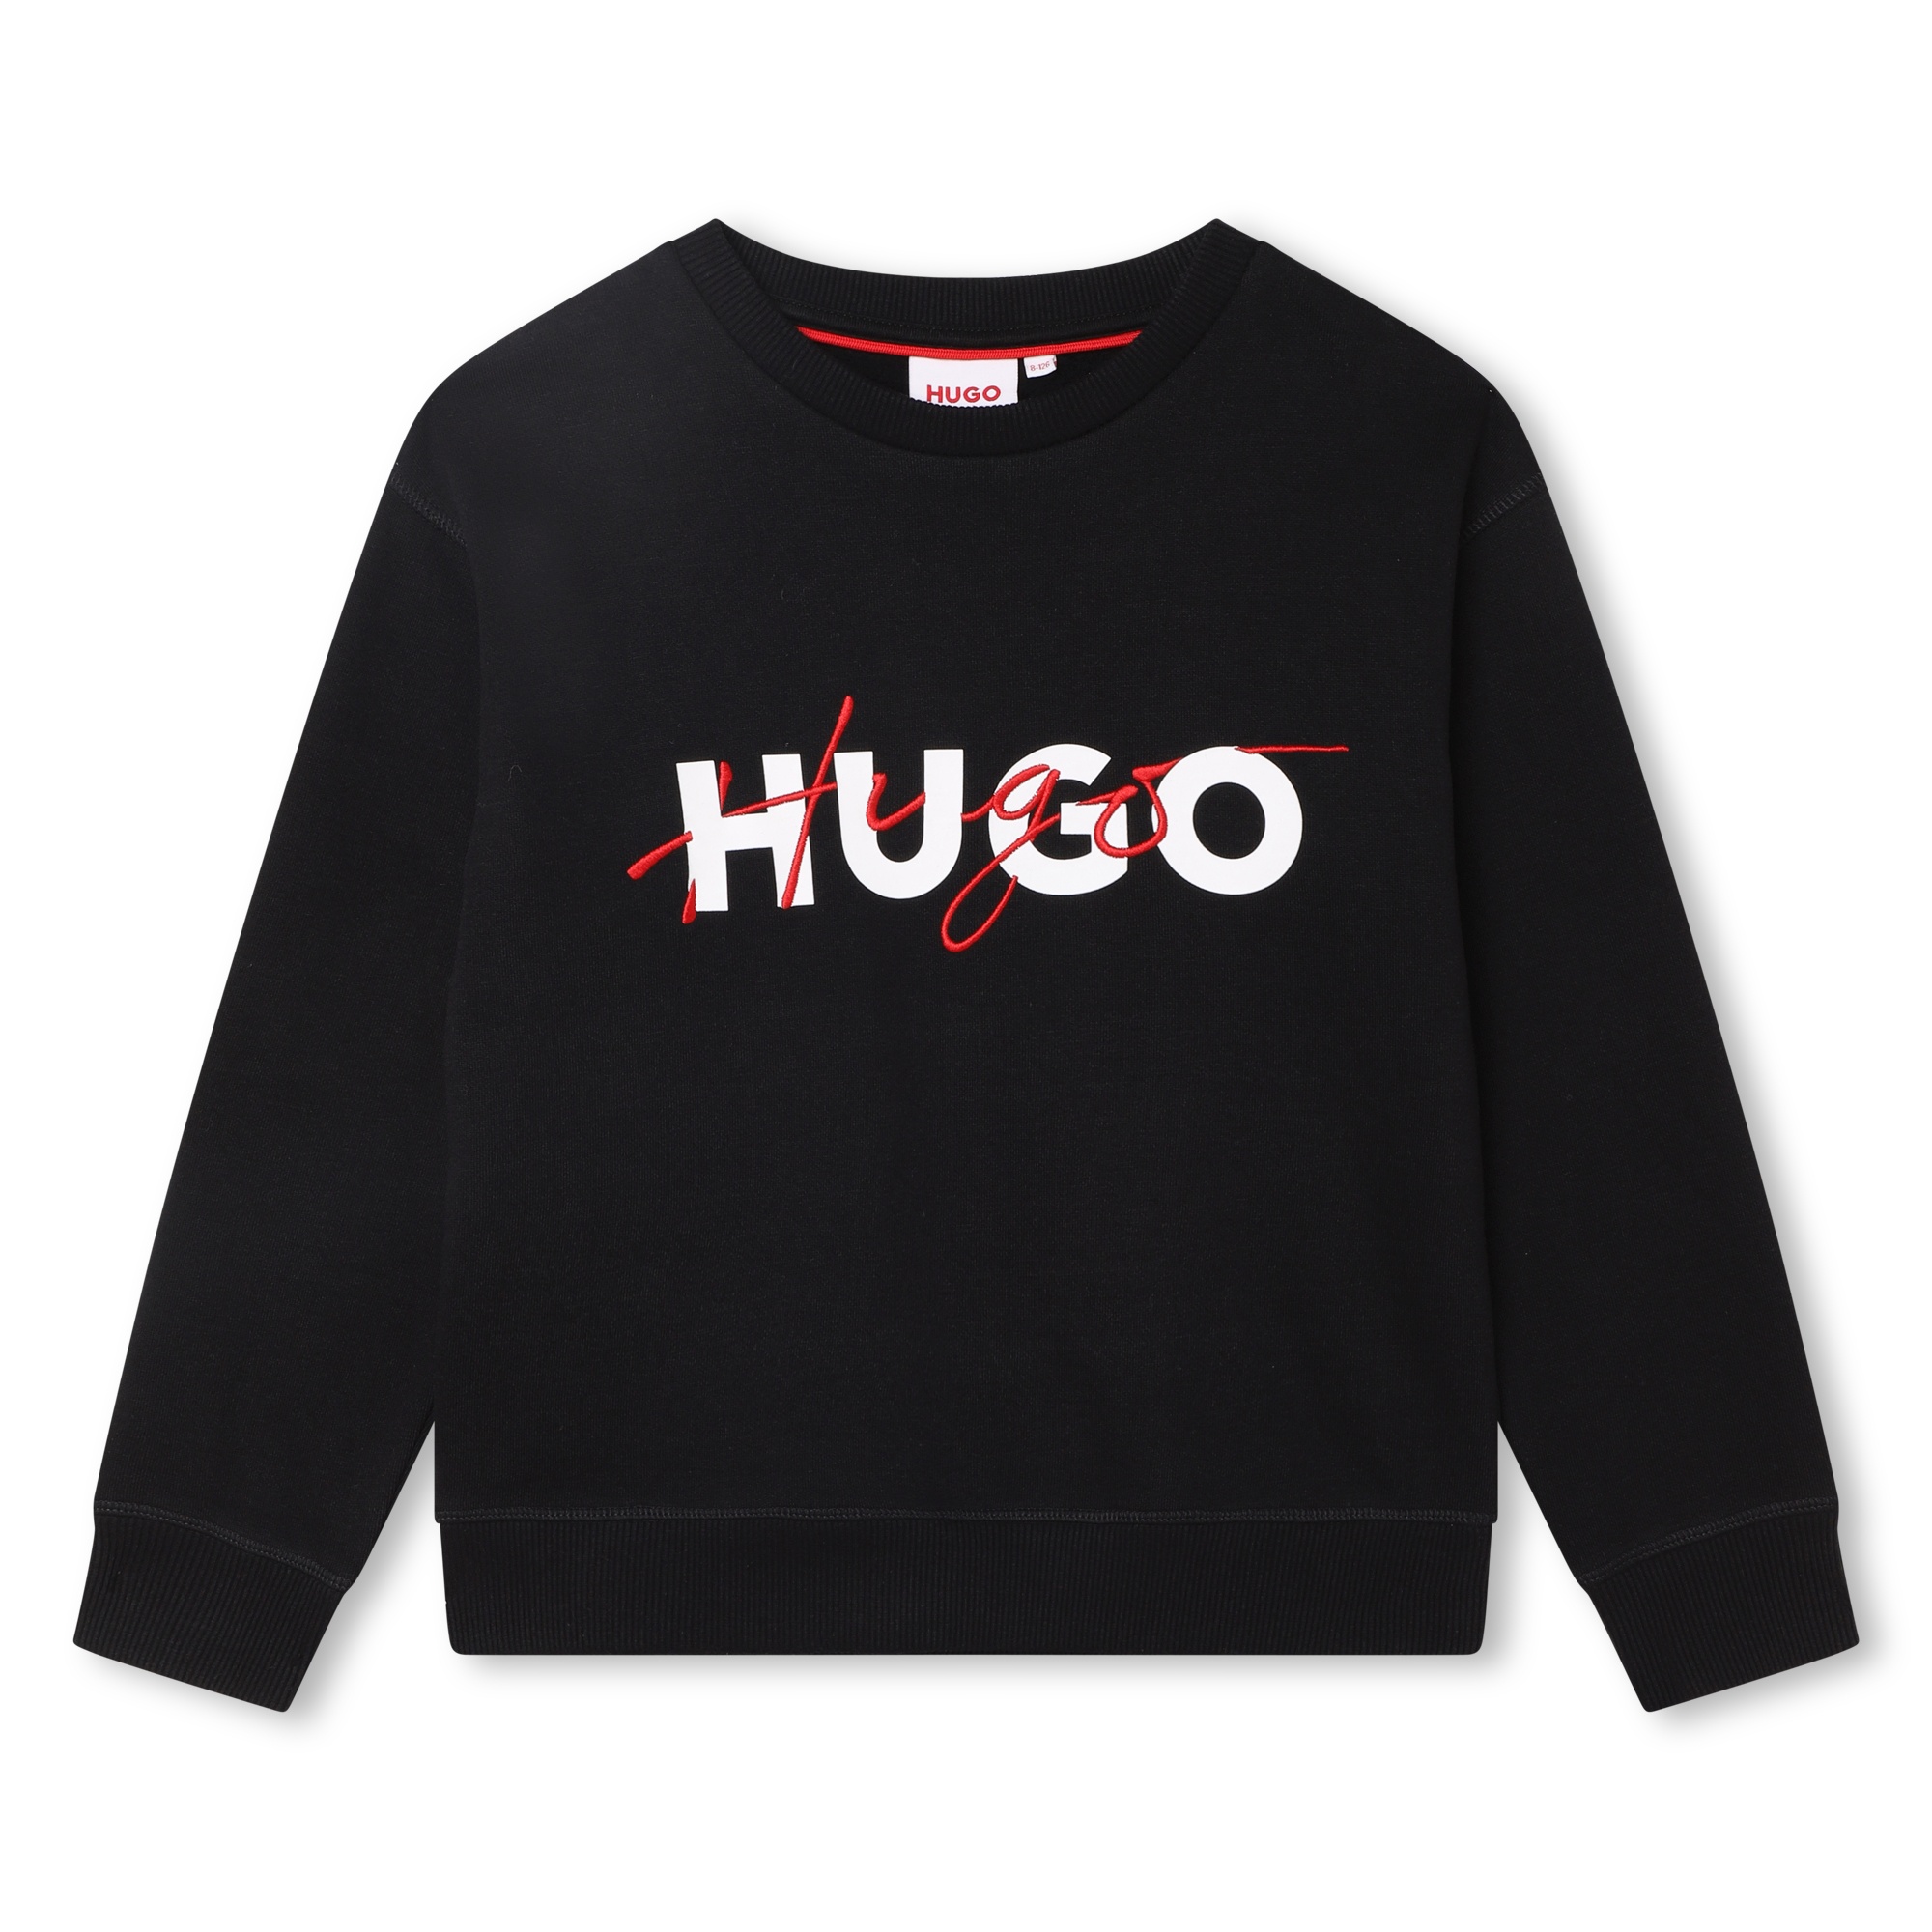 Besticktes Sweatshirt HUGO Für JUNGE